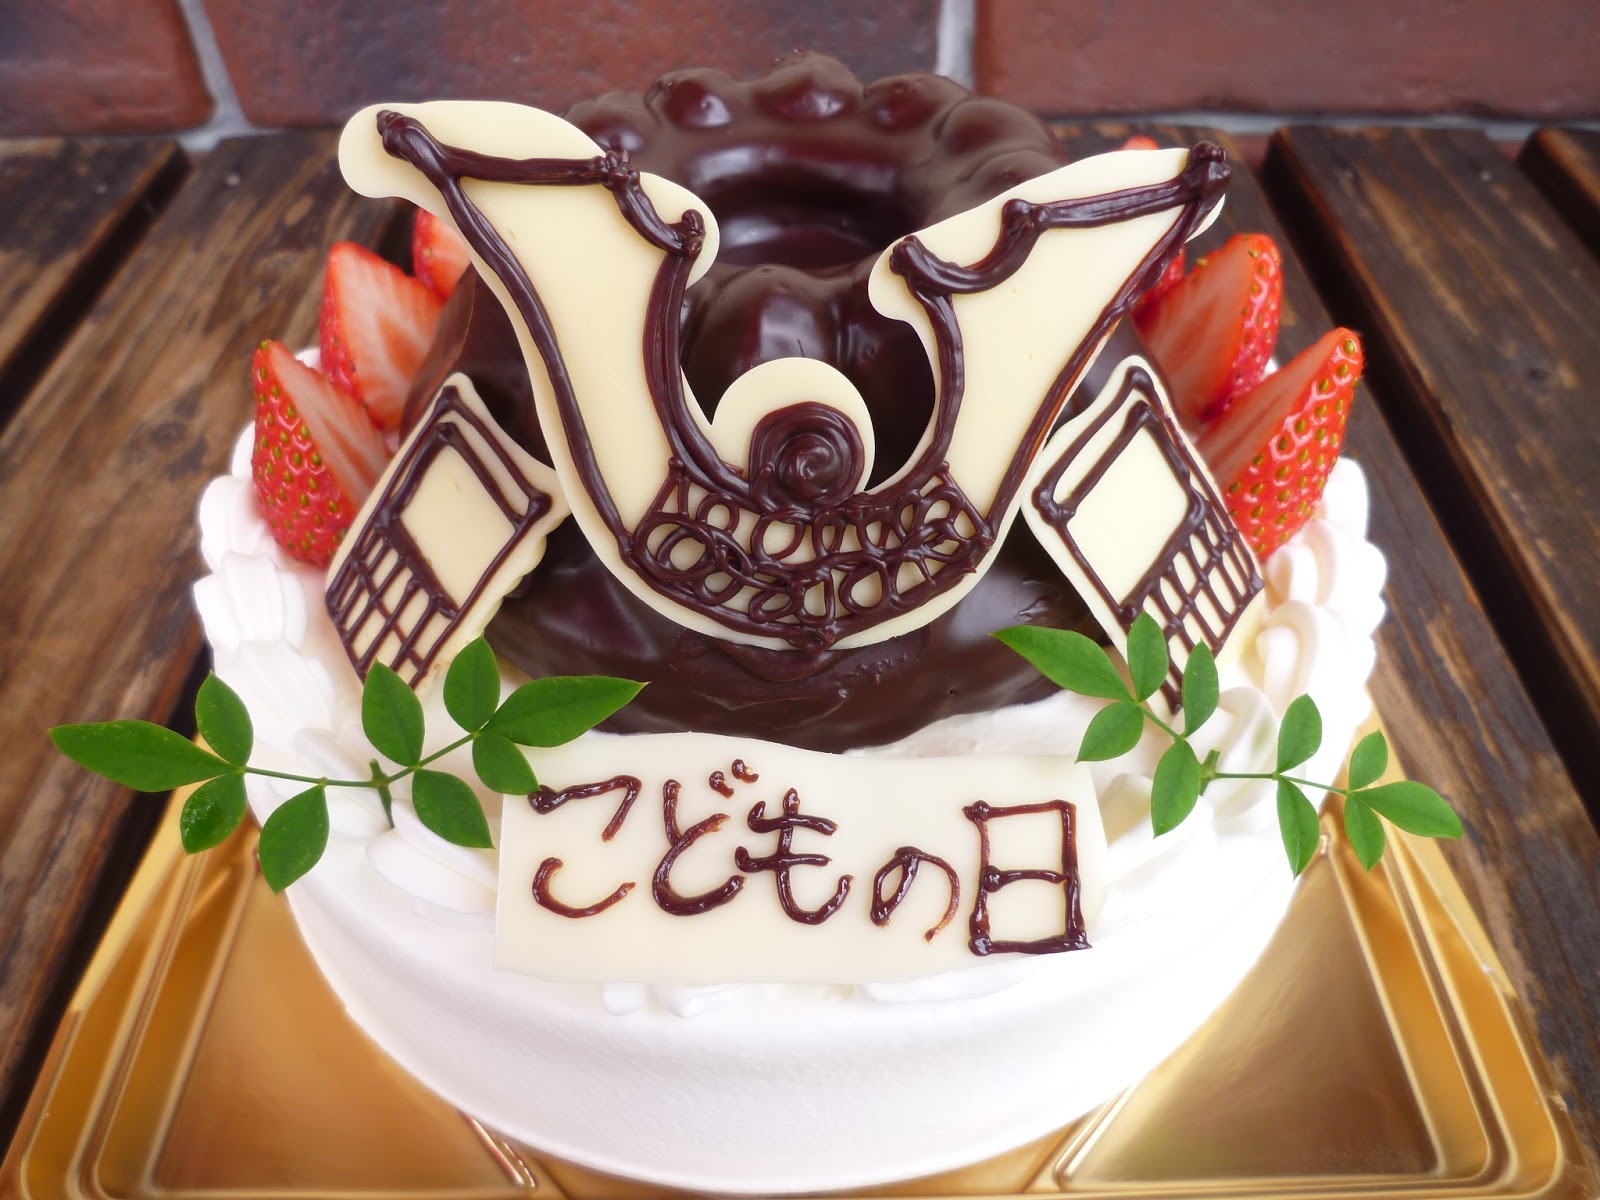 神奈川県小田原市中里のケーキ屋フロマージュのブログ 18こどもの日のデコレーションケーキのご予約を承ります